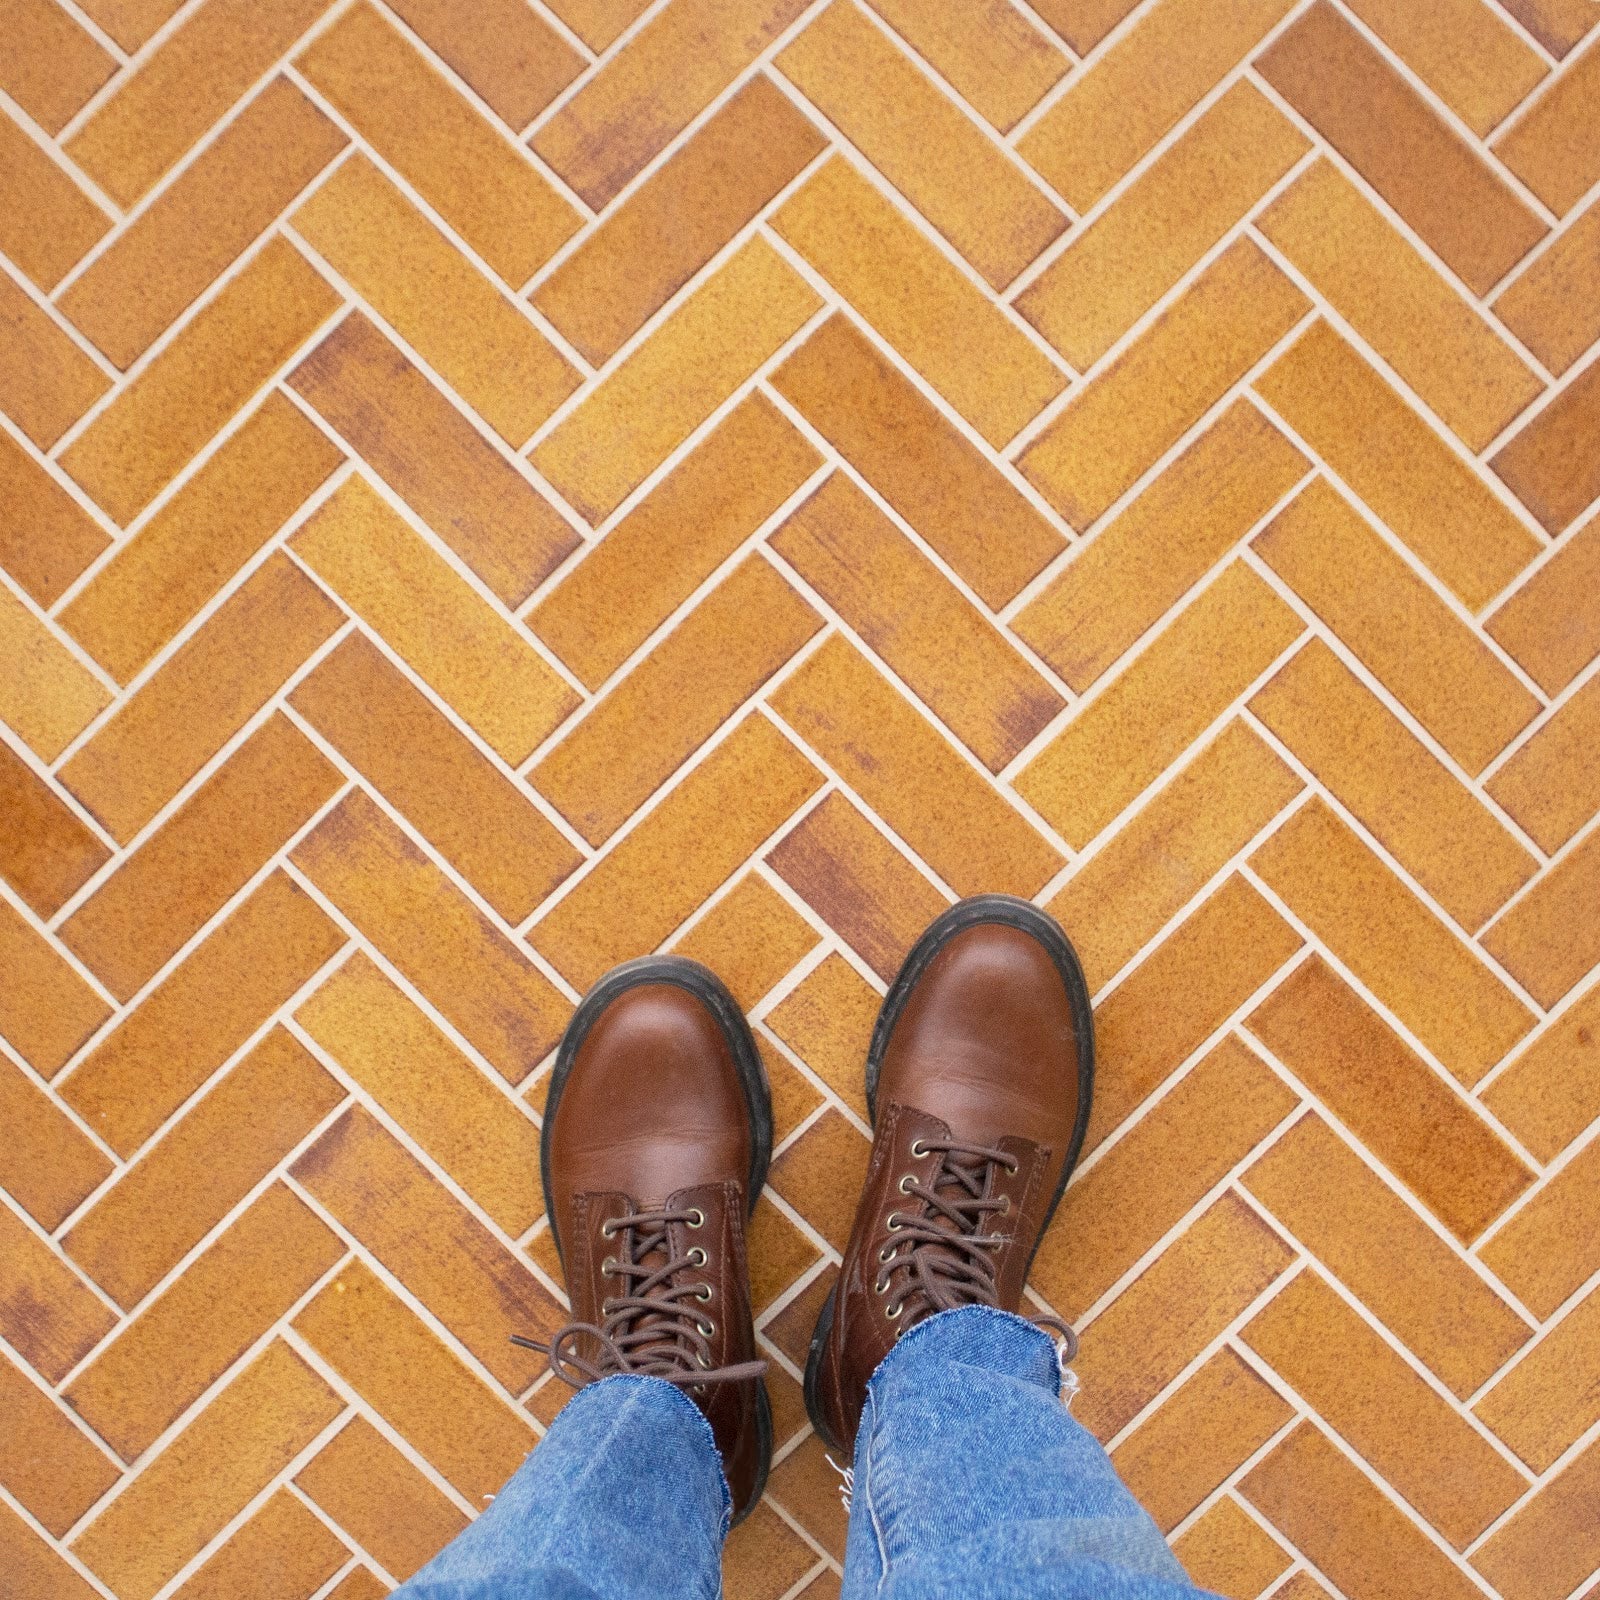 Orange Herringbone Tile Floor